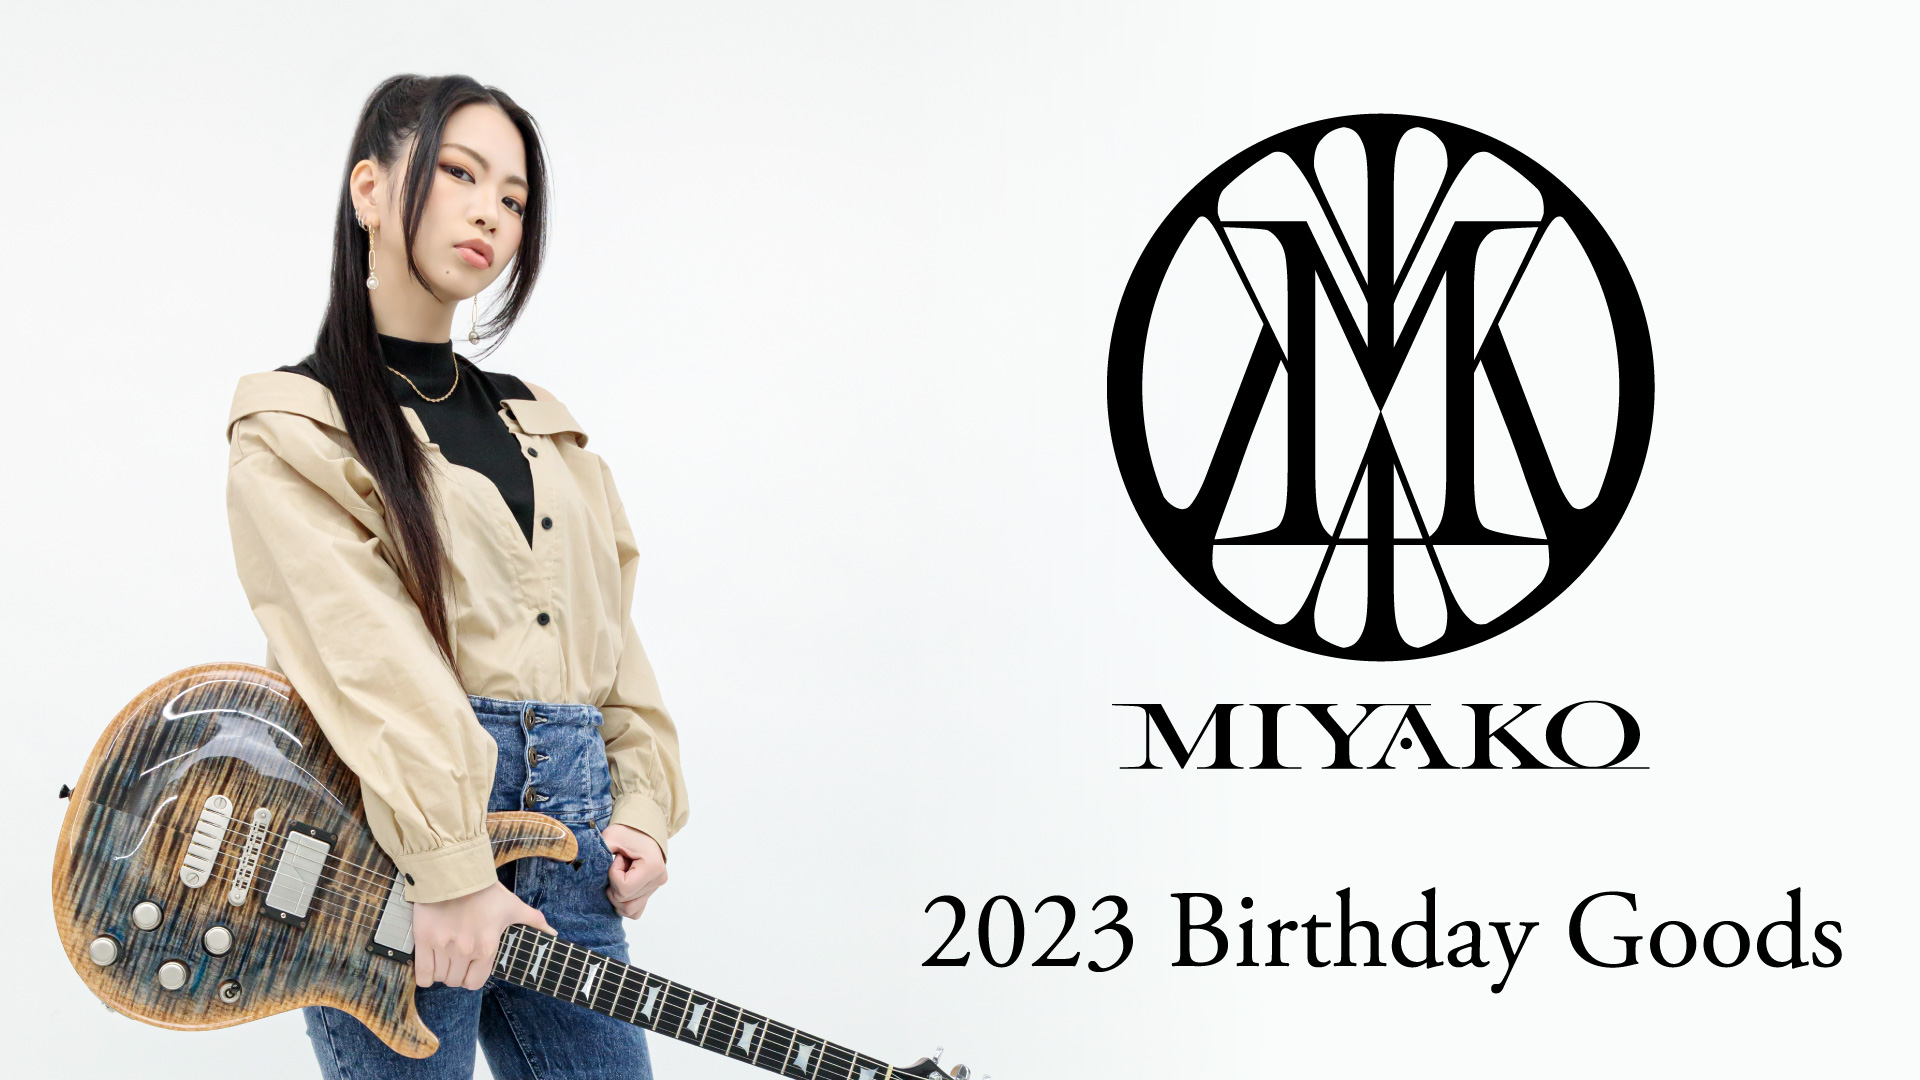 MIYAKO(LOVEBITES) 2023 Birthday Goods│クロサワ楽器店